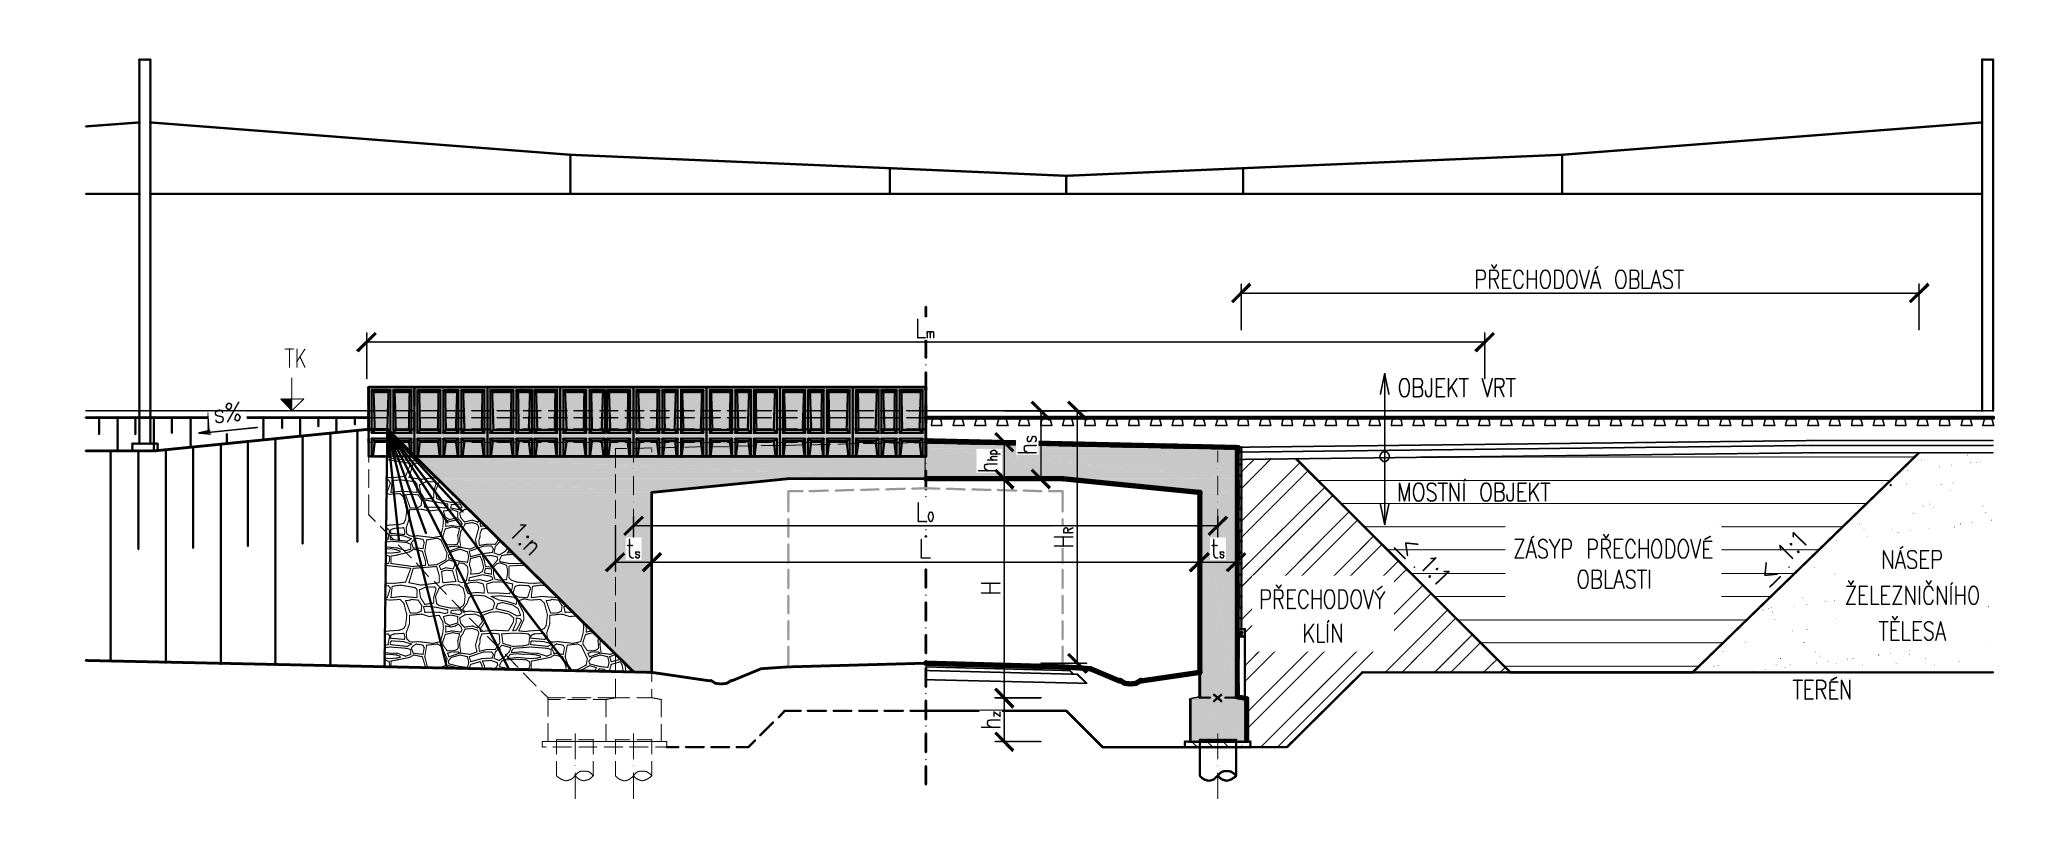 Obr. 6 – Přímo pojížděný polorám s hlubinným založením. Zdroj: MVL111